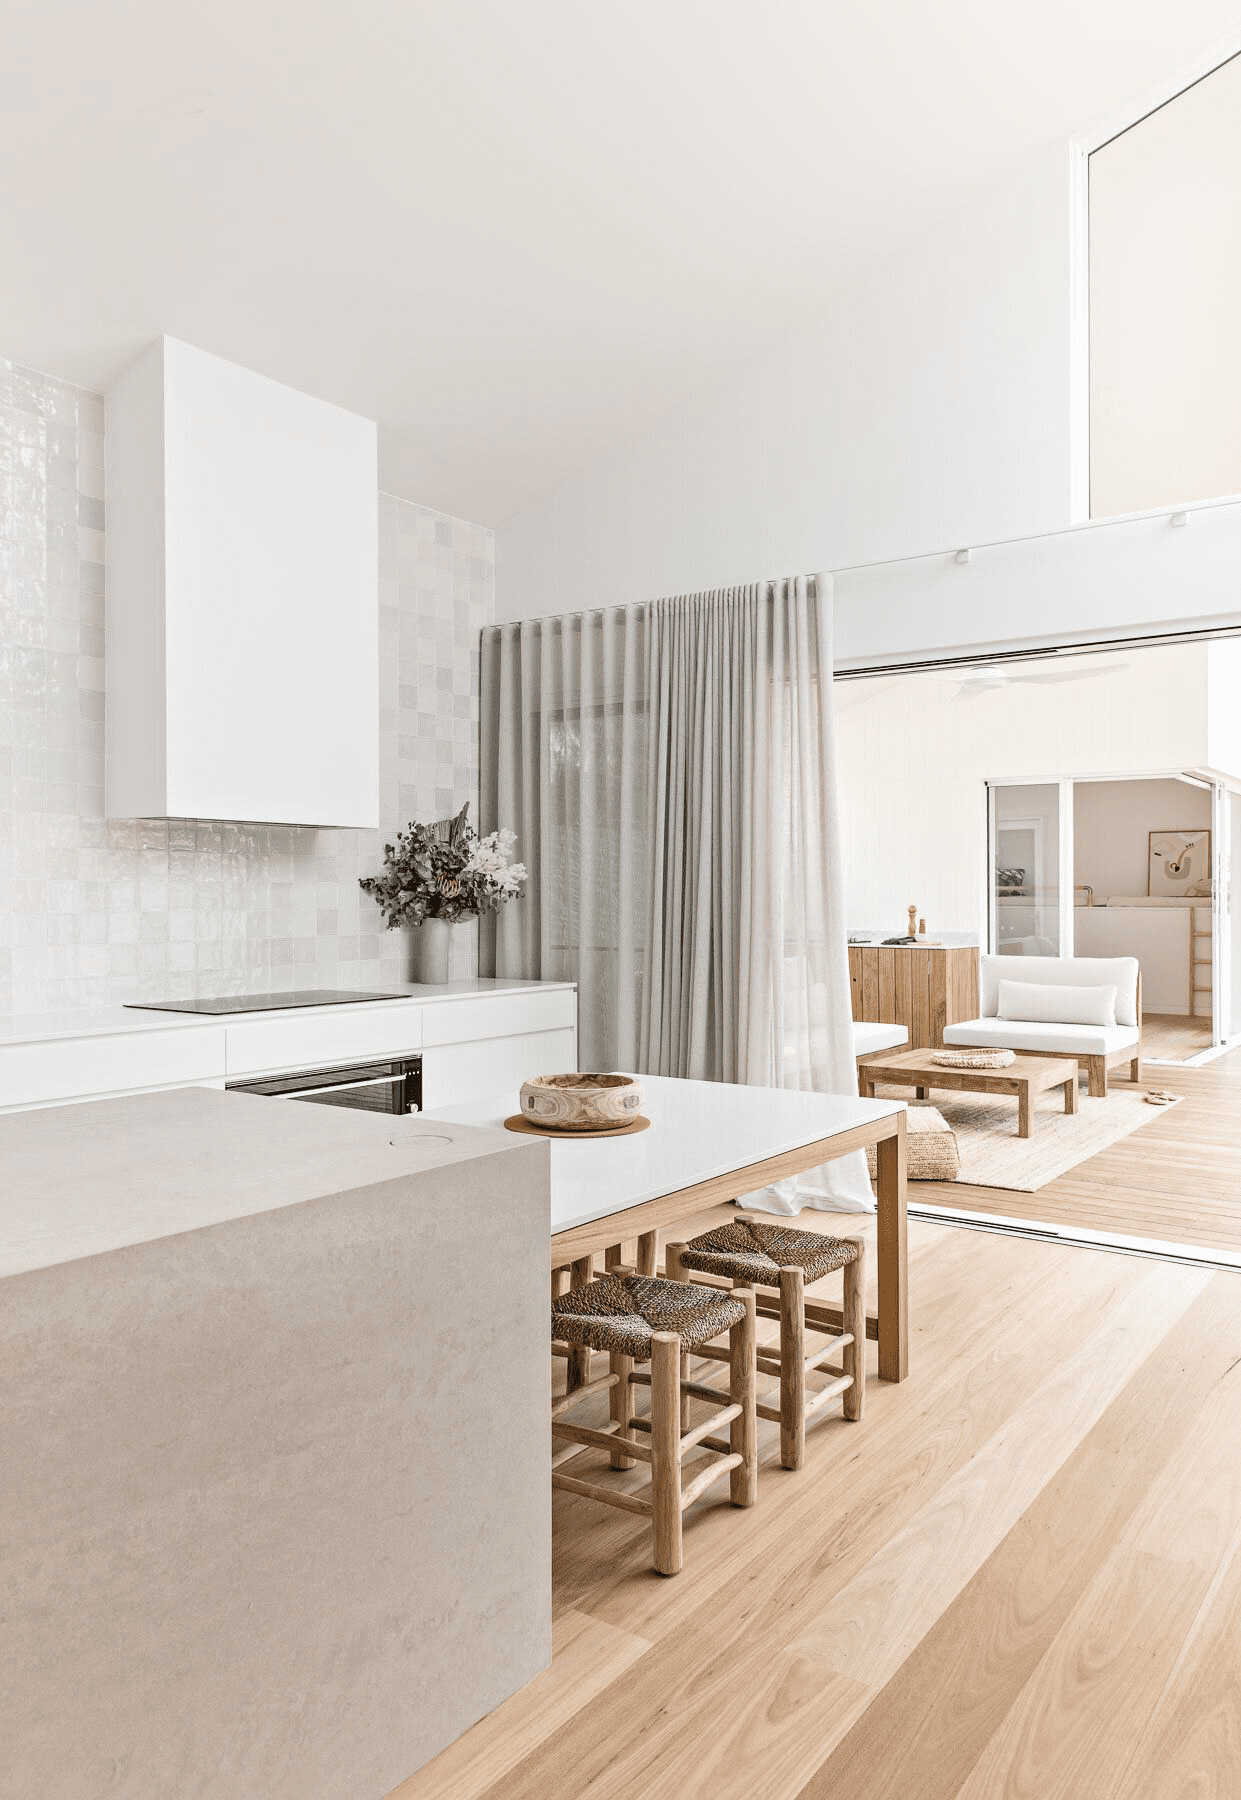 projeto de design de interior de cozinha